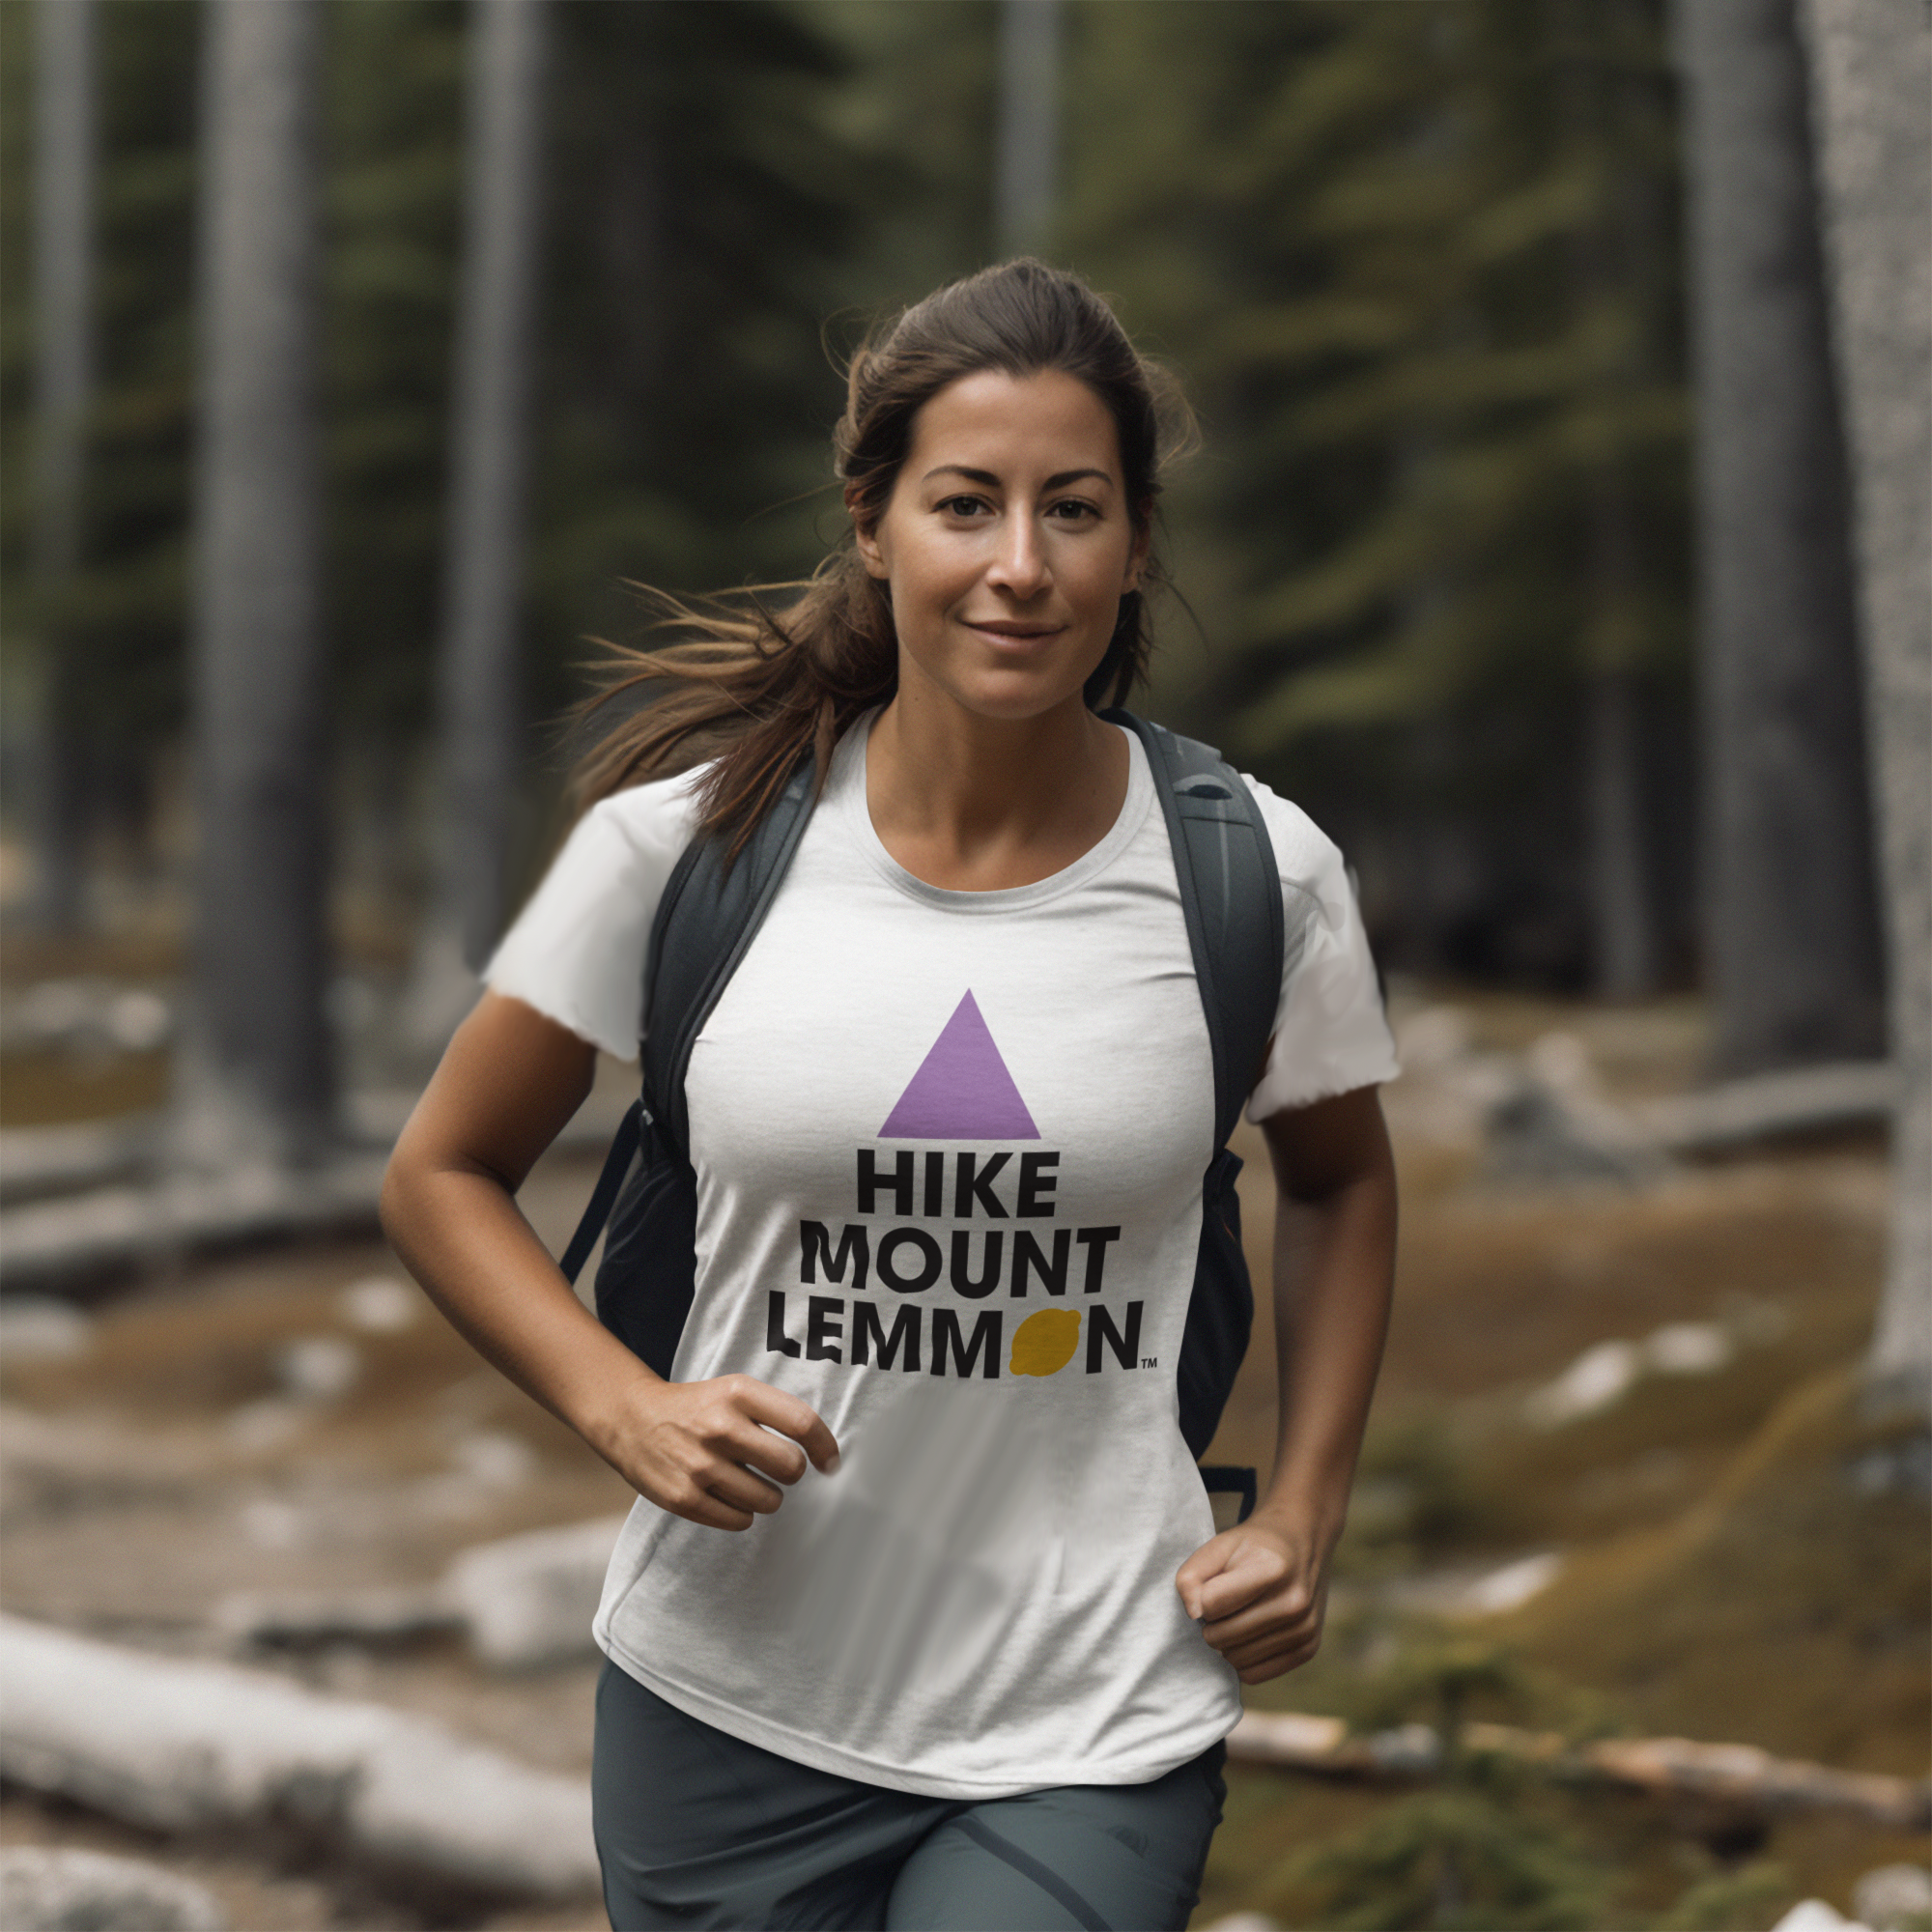 "Hike Mount Lemmon" Women's White T-Shirt - New!